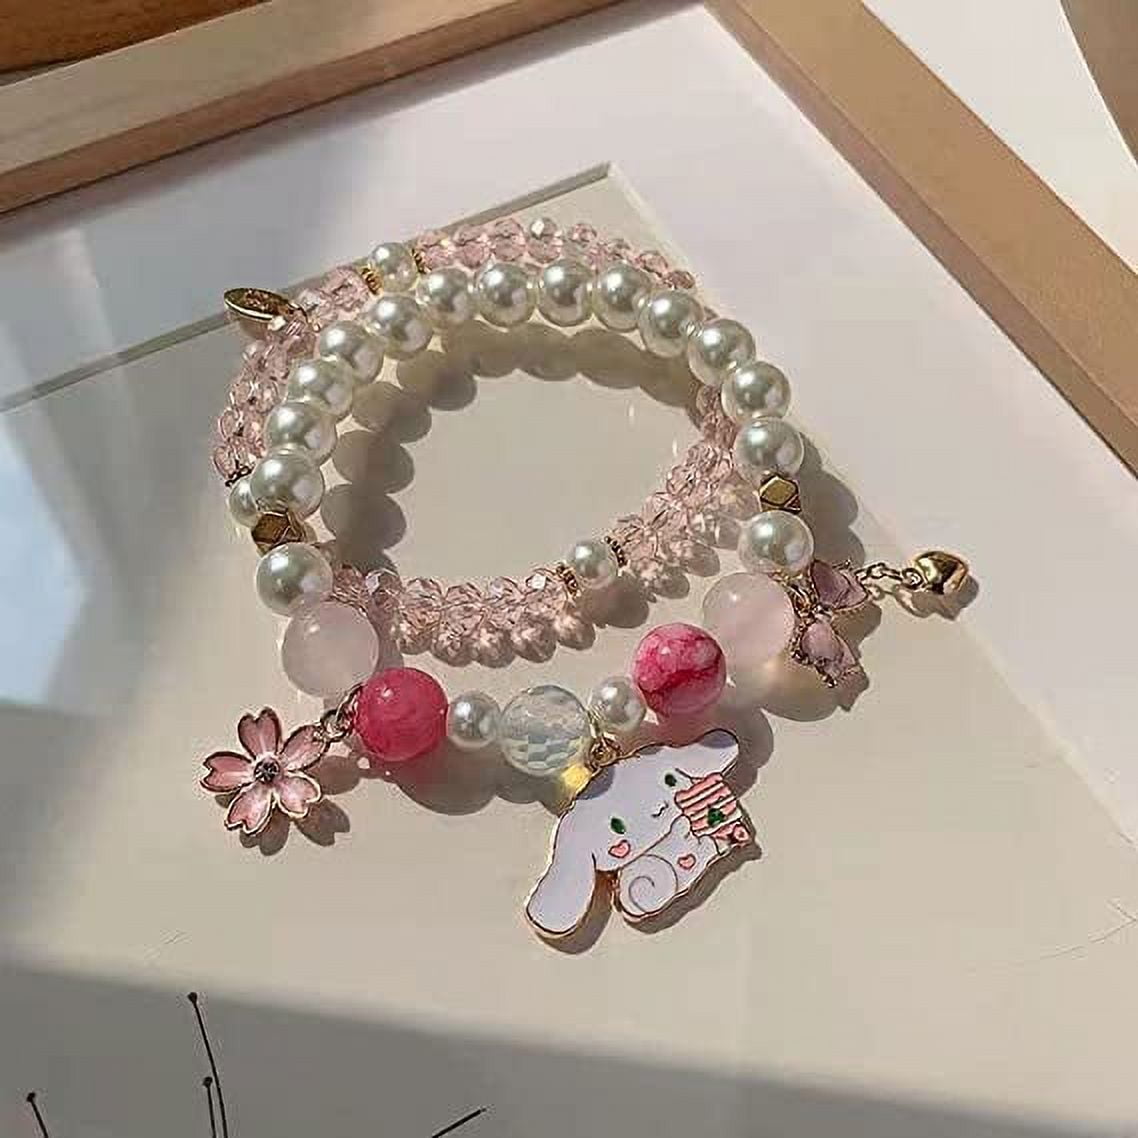 Clearance! Bracelets Set Crystal Beads Pearl Bracelets Cute Cartoon Elastic Beaded Bracelets for Girls Women Friendship Jewelry, Adult Unisex, Size